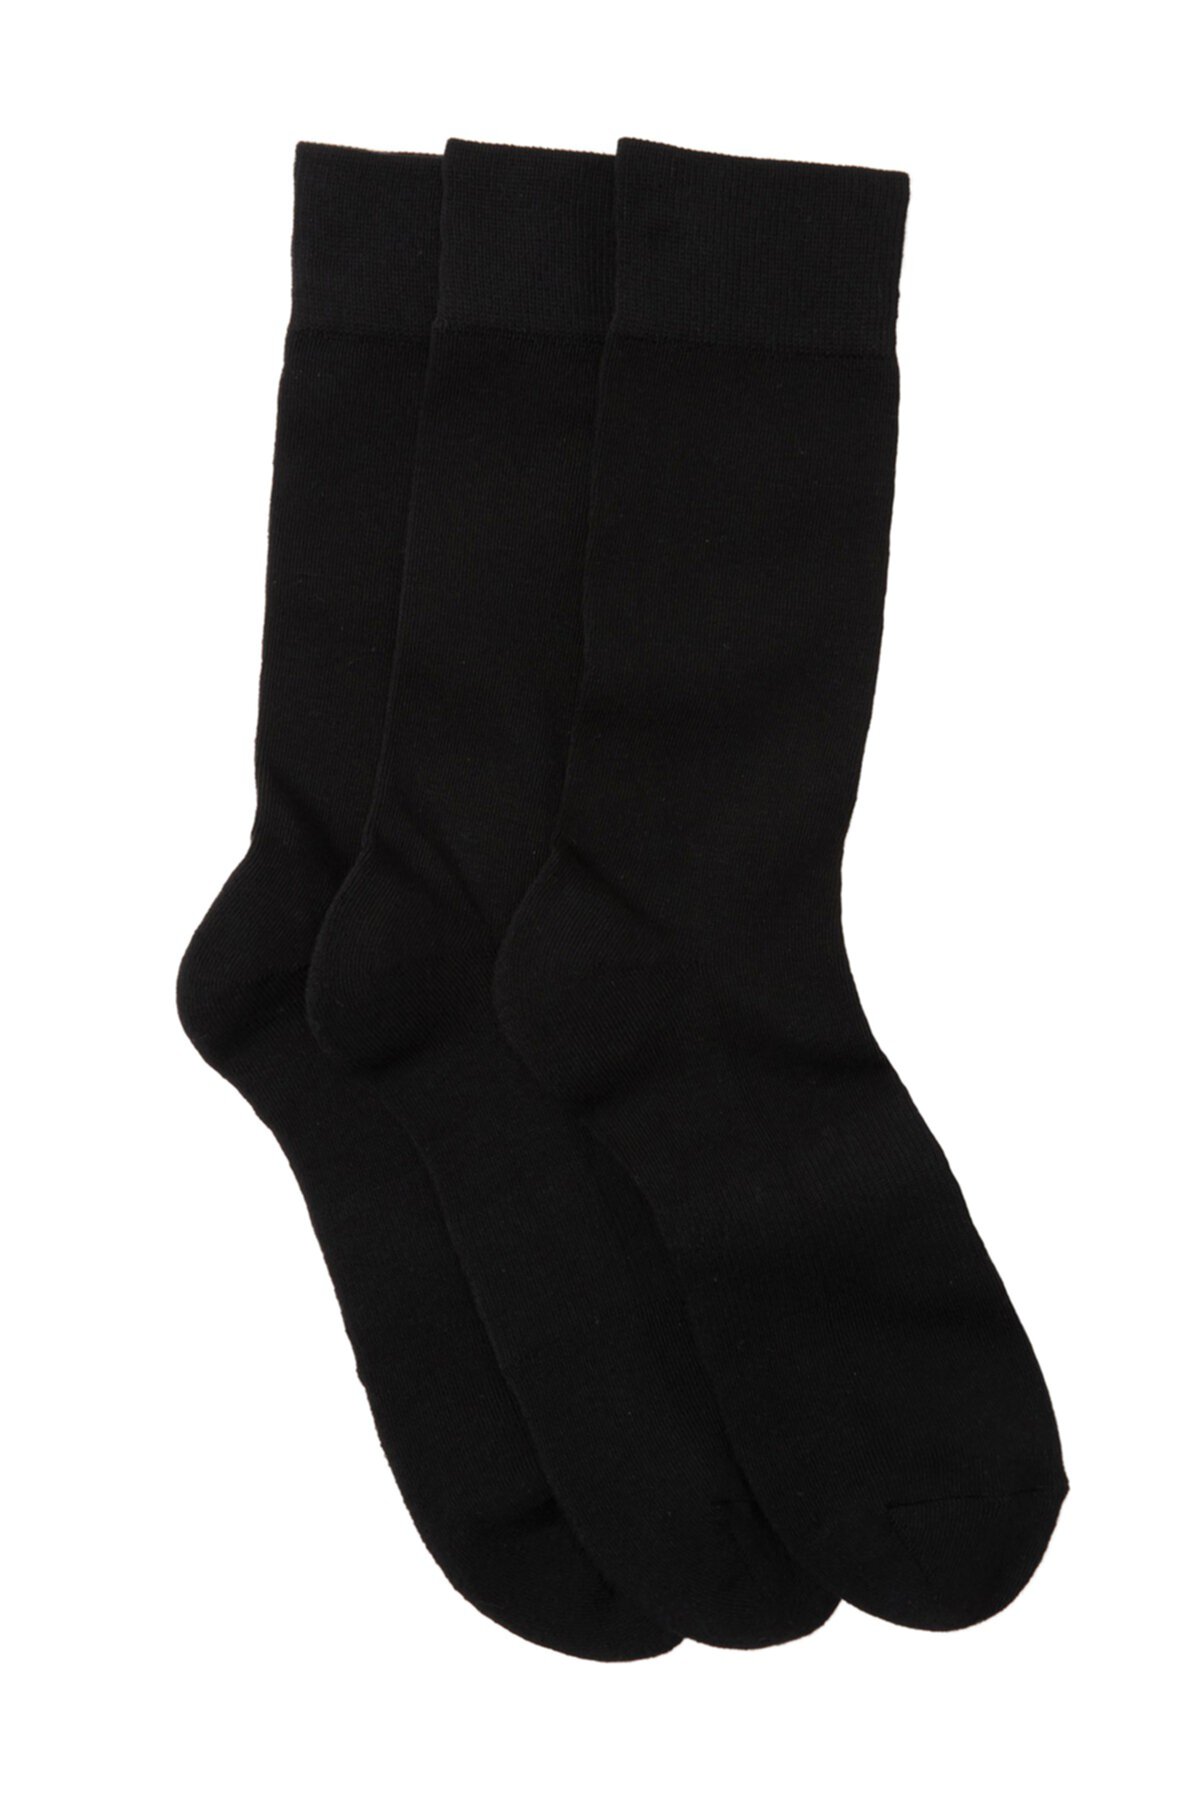 Мягкие носки для экипажа - 3 шт. В упаковке Nordstrom Rack